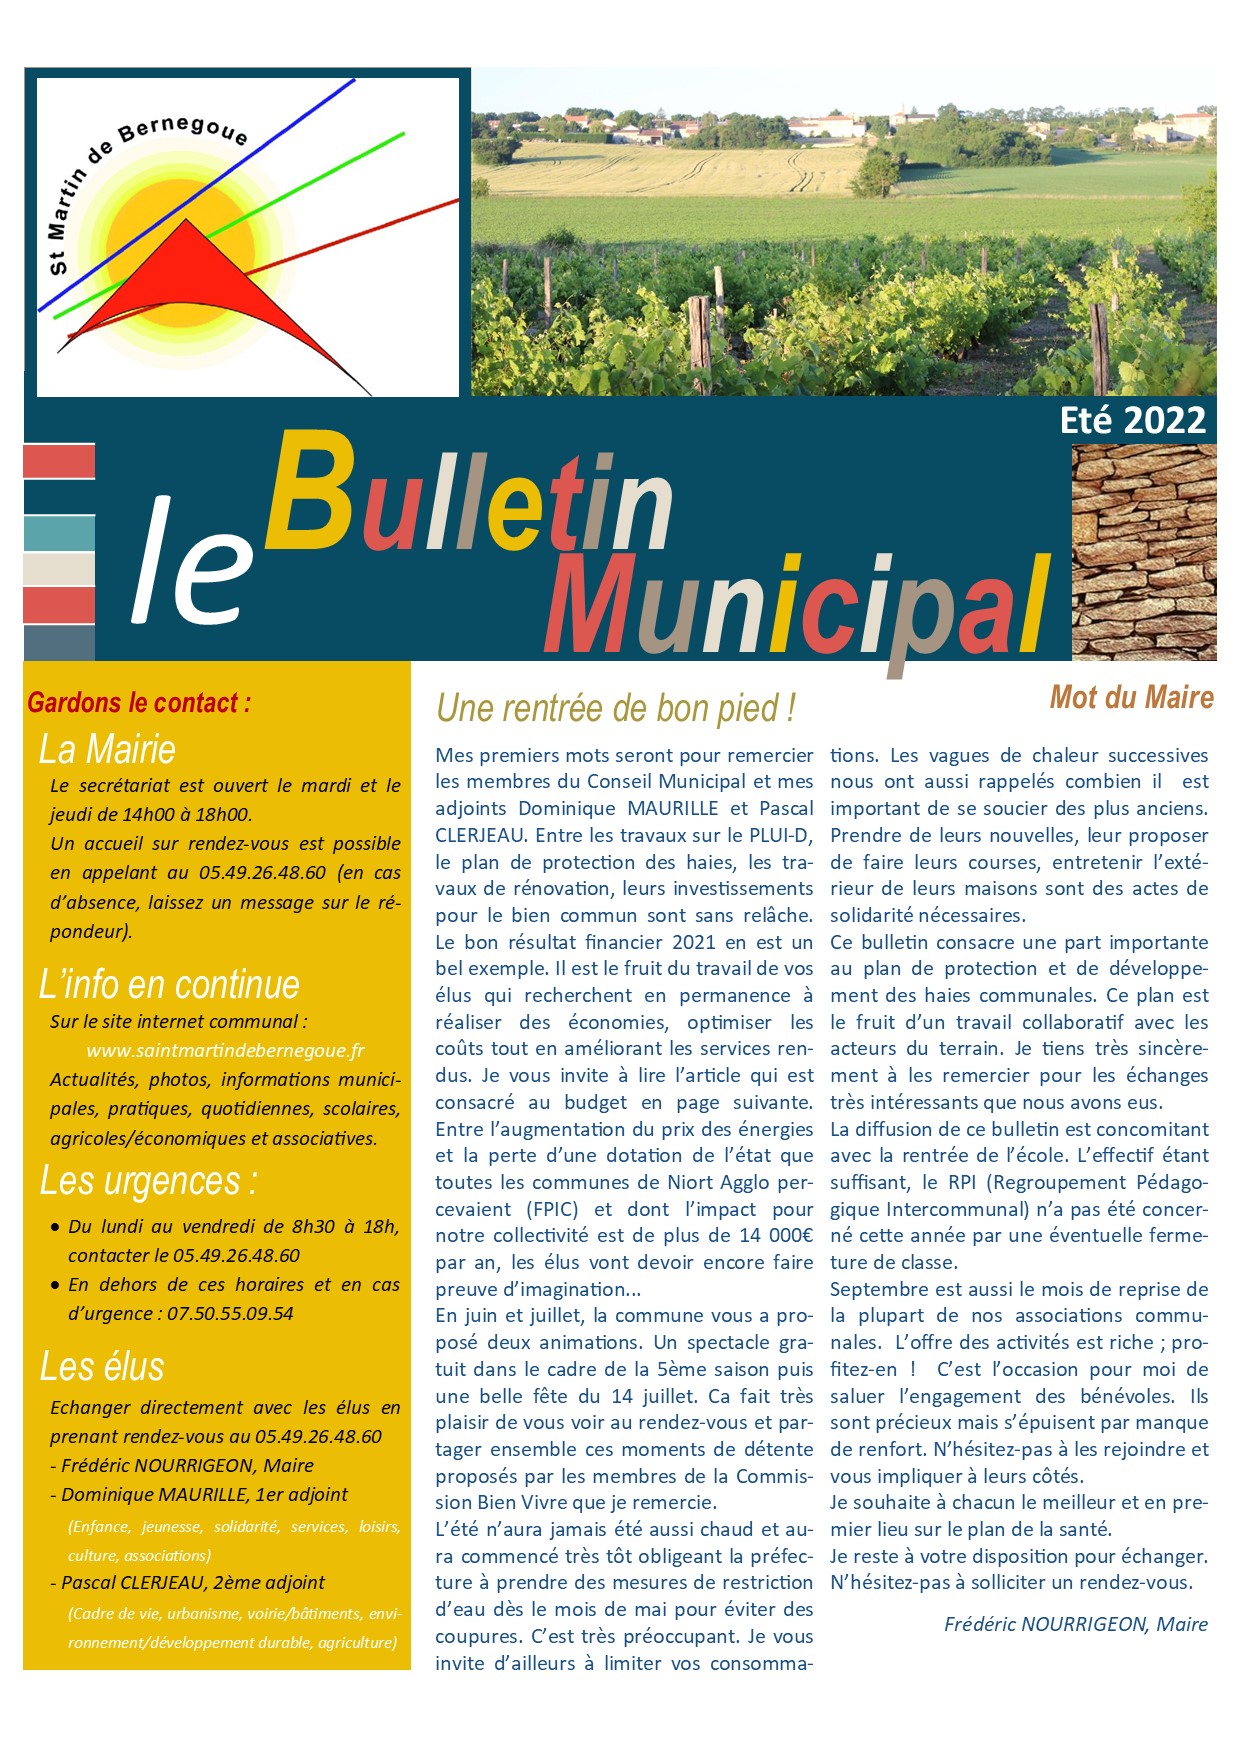 Bulletin Municipal-été 2022.jpg